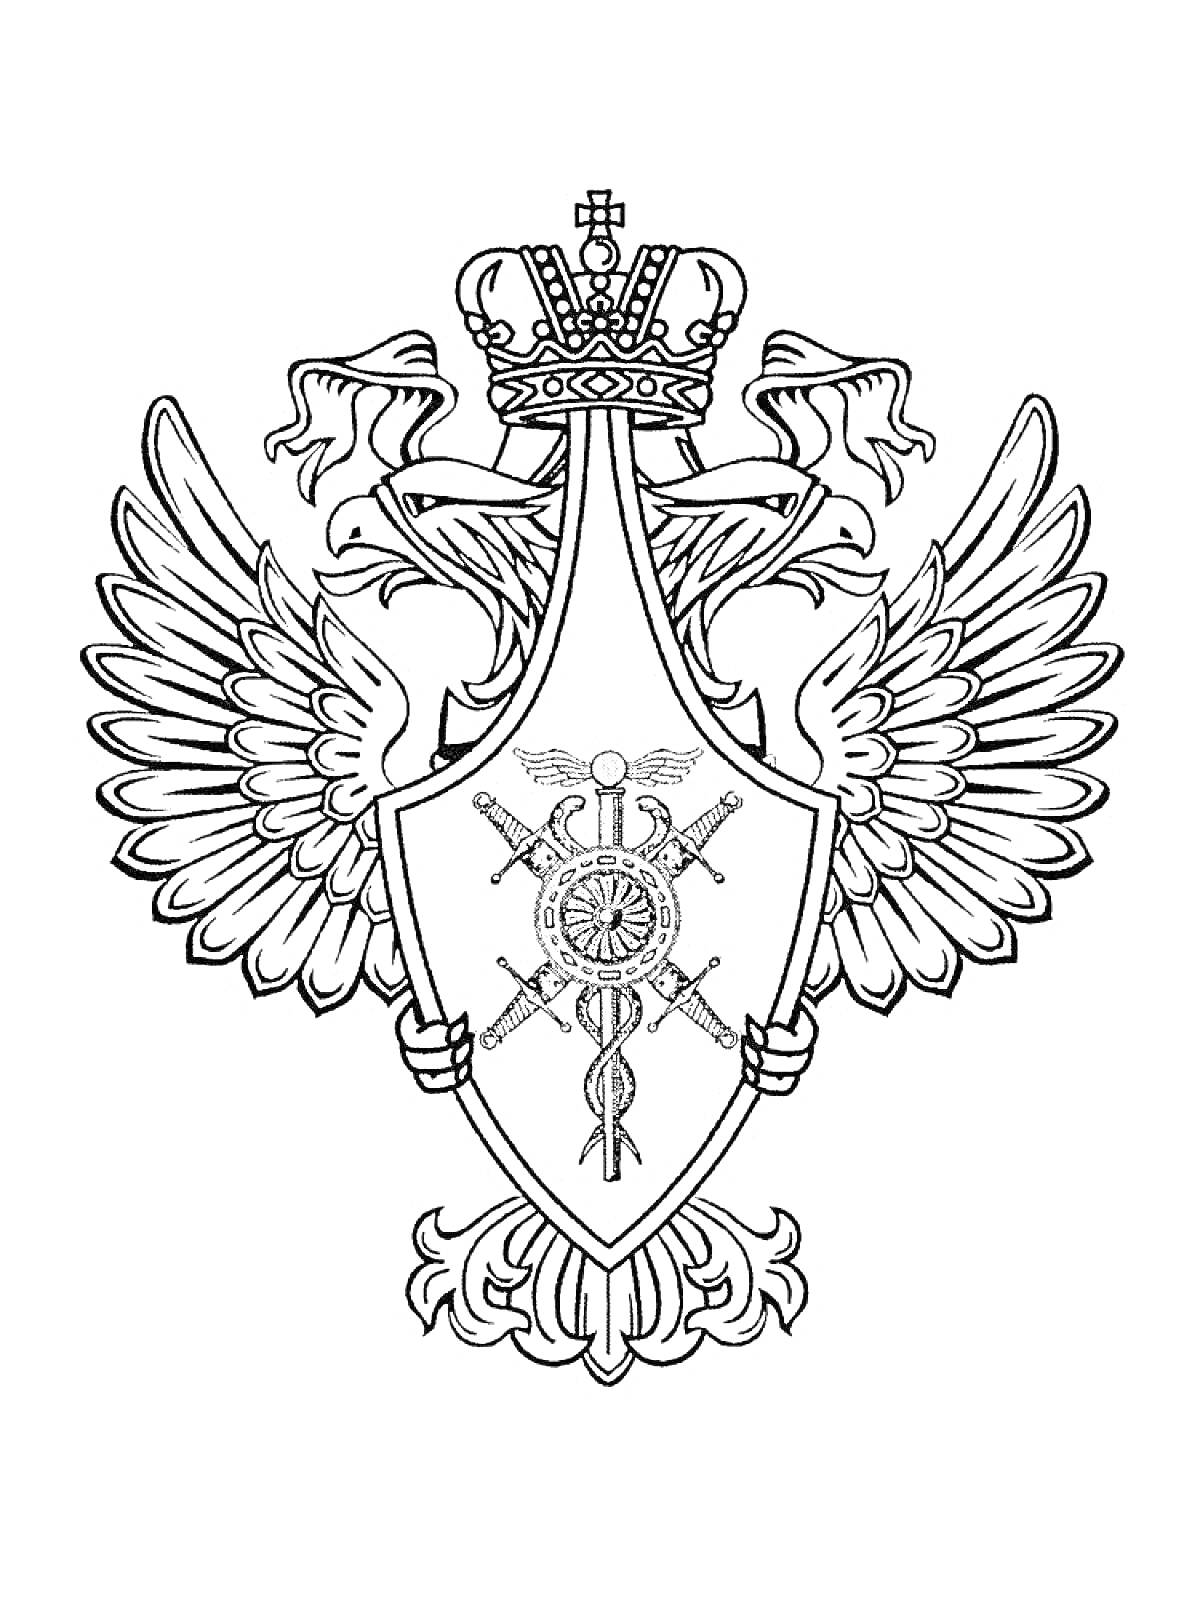 Герб с короной, шпагами и кадуцеем на щите с изображением двуглавого орла